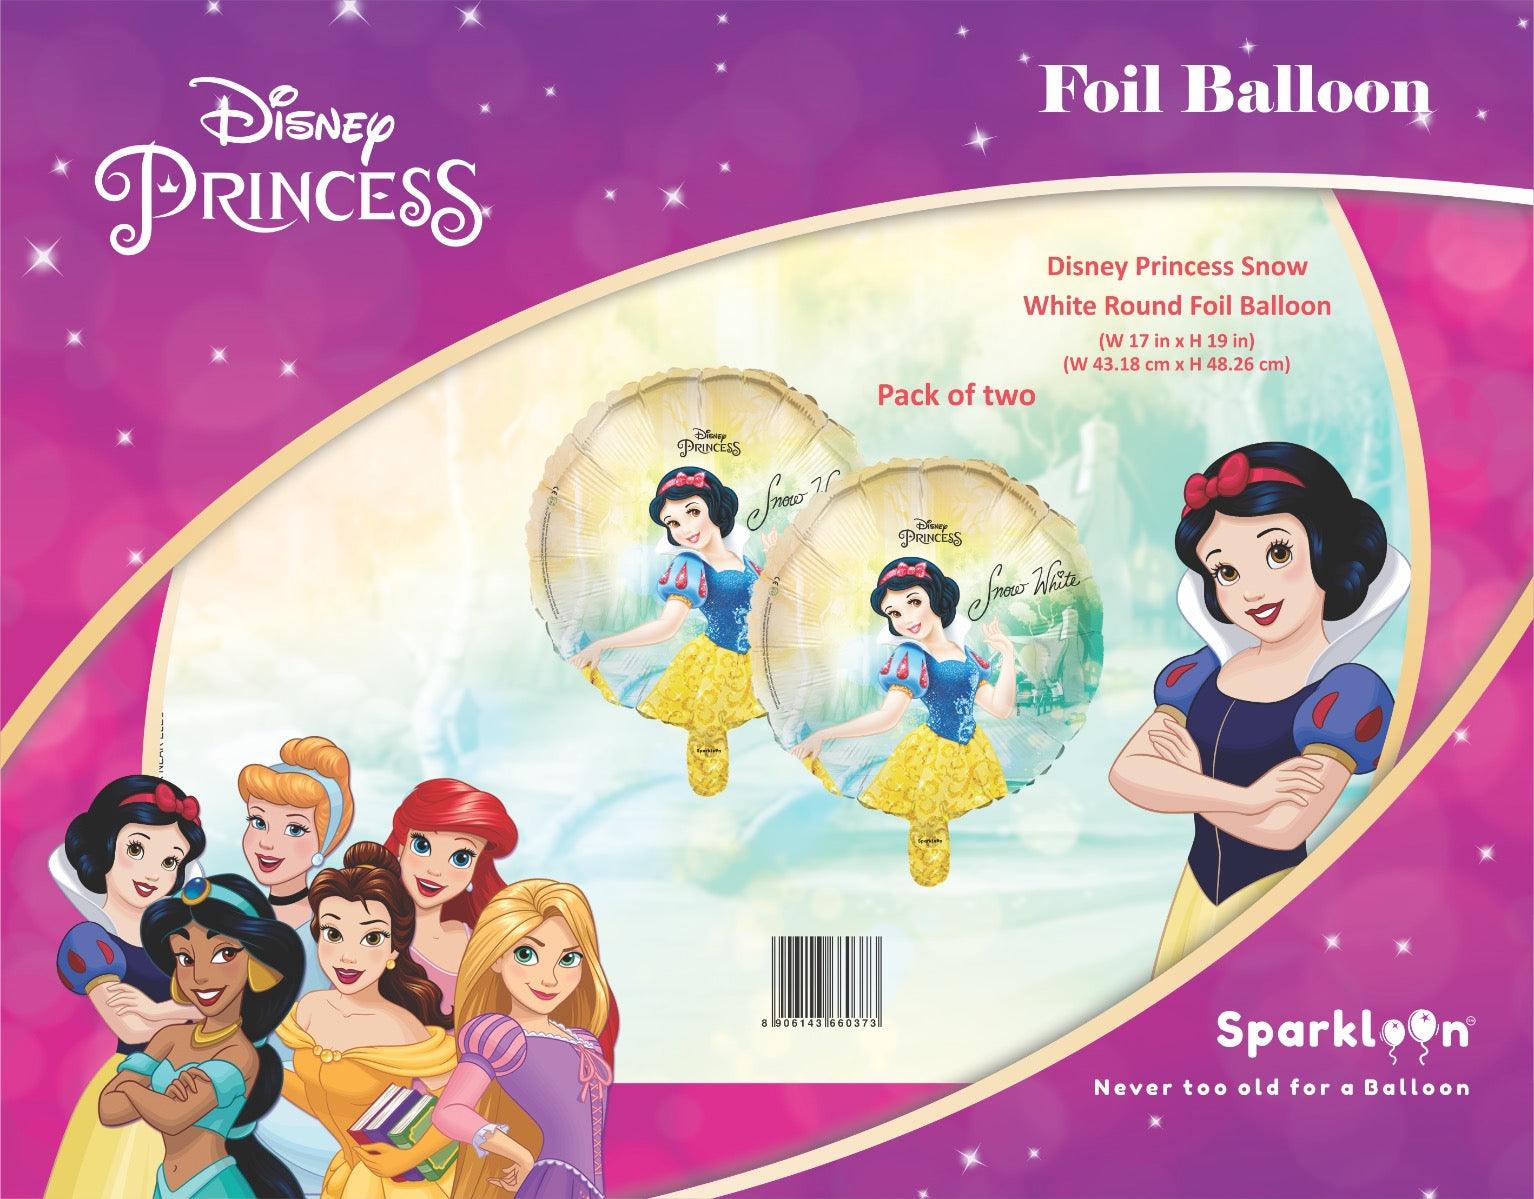 Disney Princess Snow White Round Foil Balloon, Pack of 2